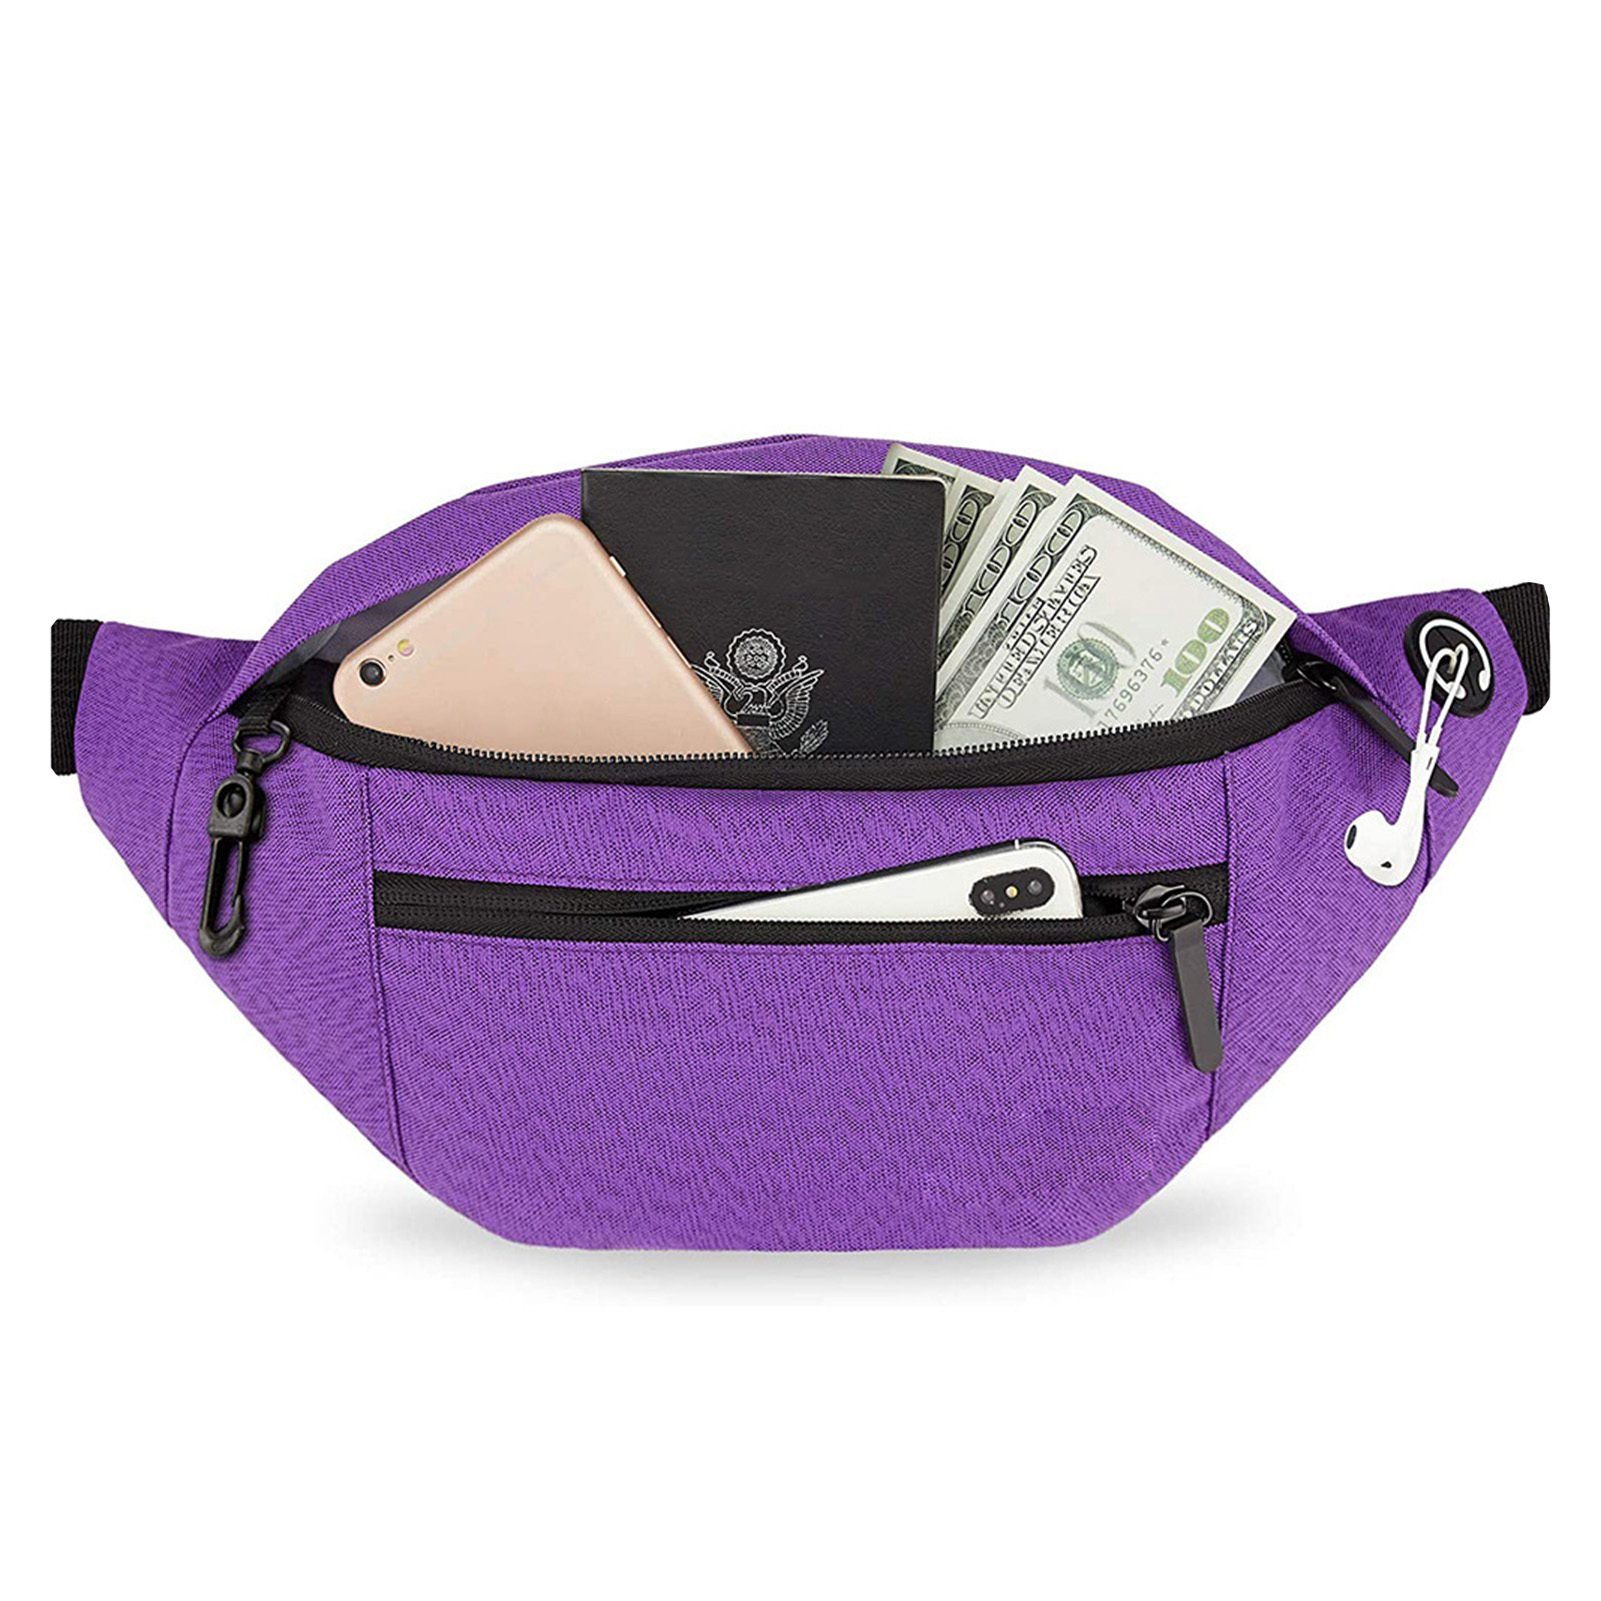 Bag,Brusttasche, Große purple Umhängetasche Umhängetasche,Tragbare Schultertasche Blusmart Crossbody